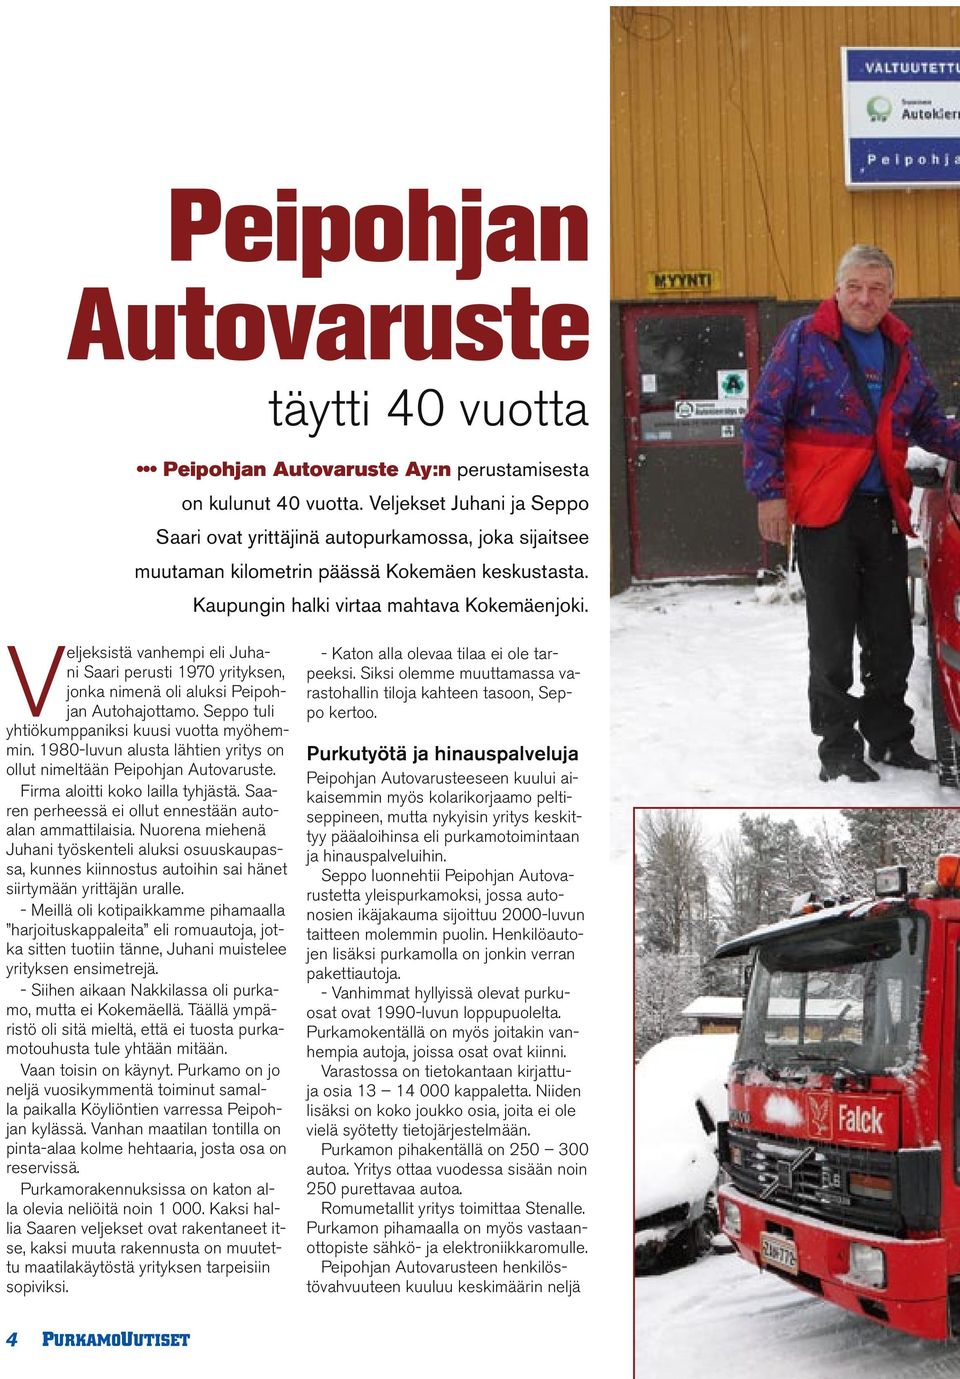 Veljeksistä vanhempi eli Juhani Saari perusti 1970 yrityksen, jonka nimenä oli aluksi Peipohjan Autohajottamo. Seppo tuli yhtiökumppaniksi kuusi vuotta myöhemmin.